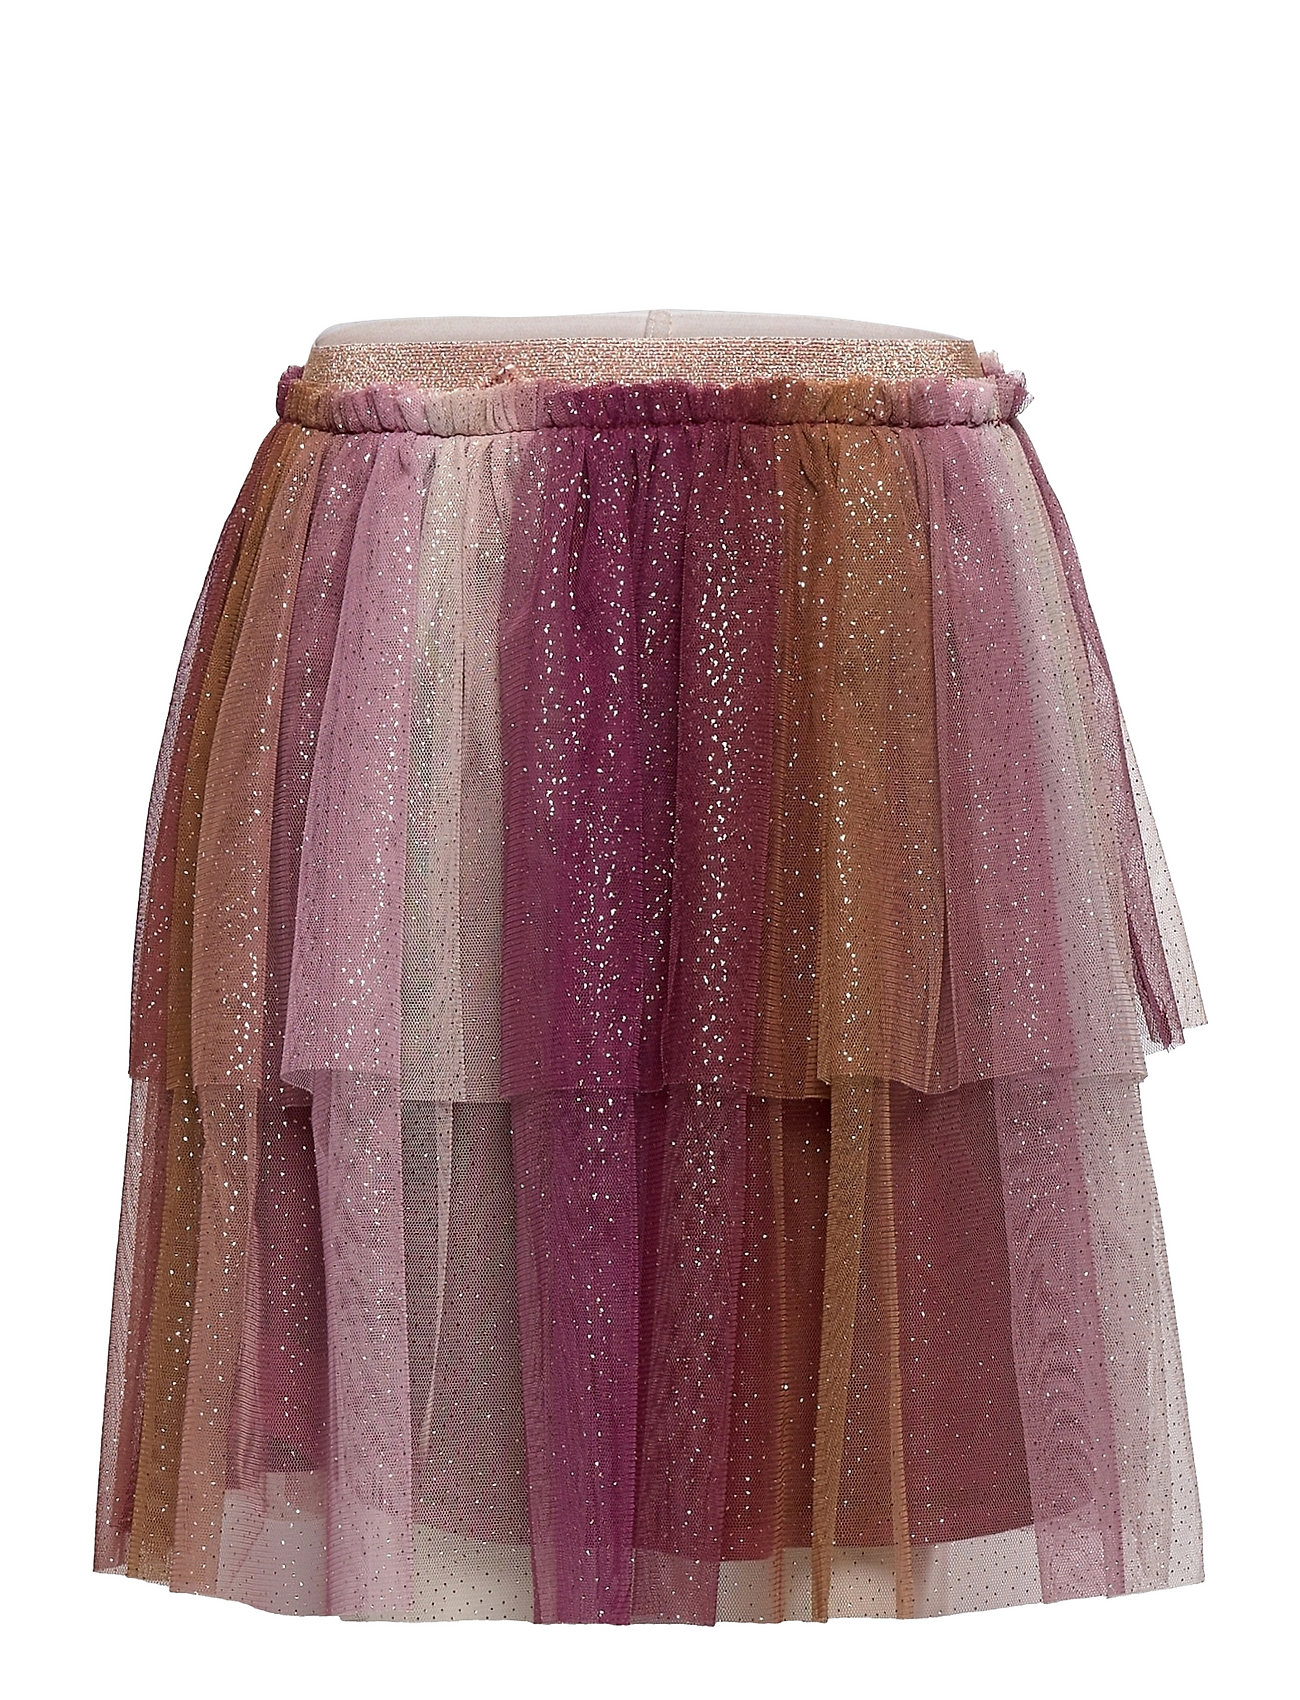 Skirt Tulle W/ Glitter Hame Liila Minymo